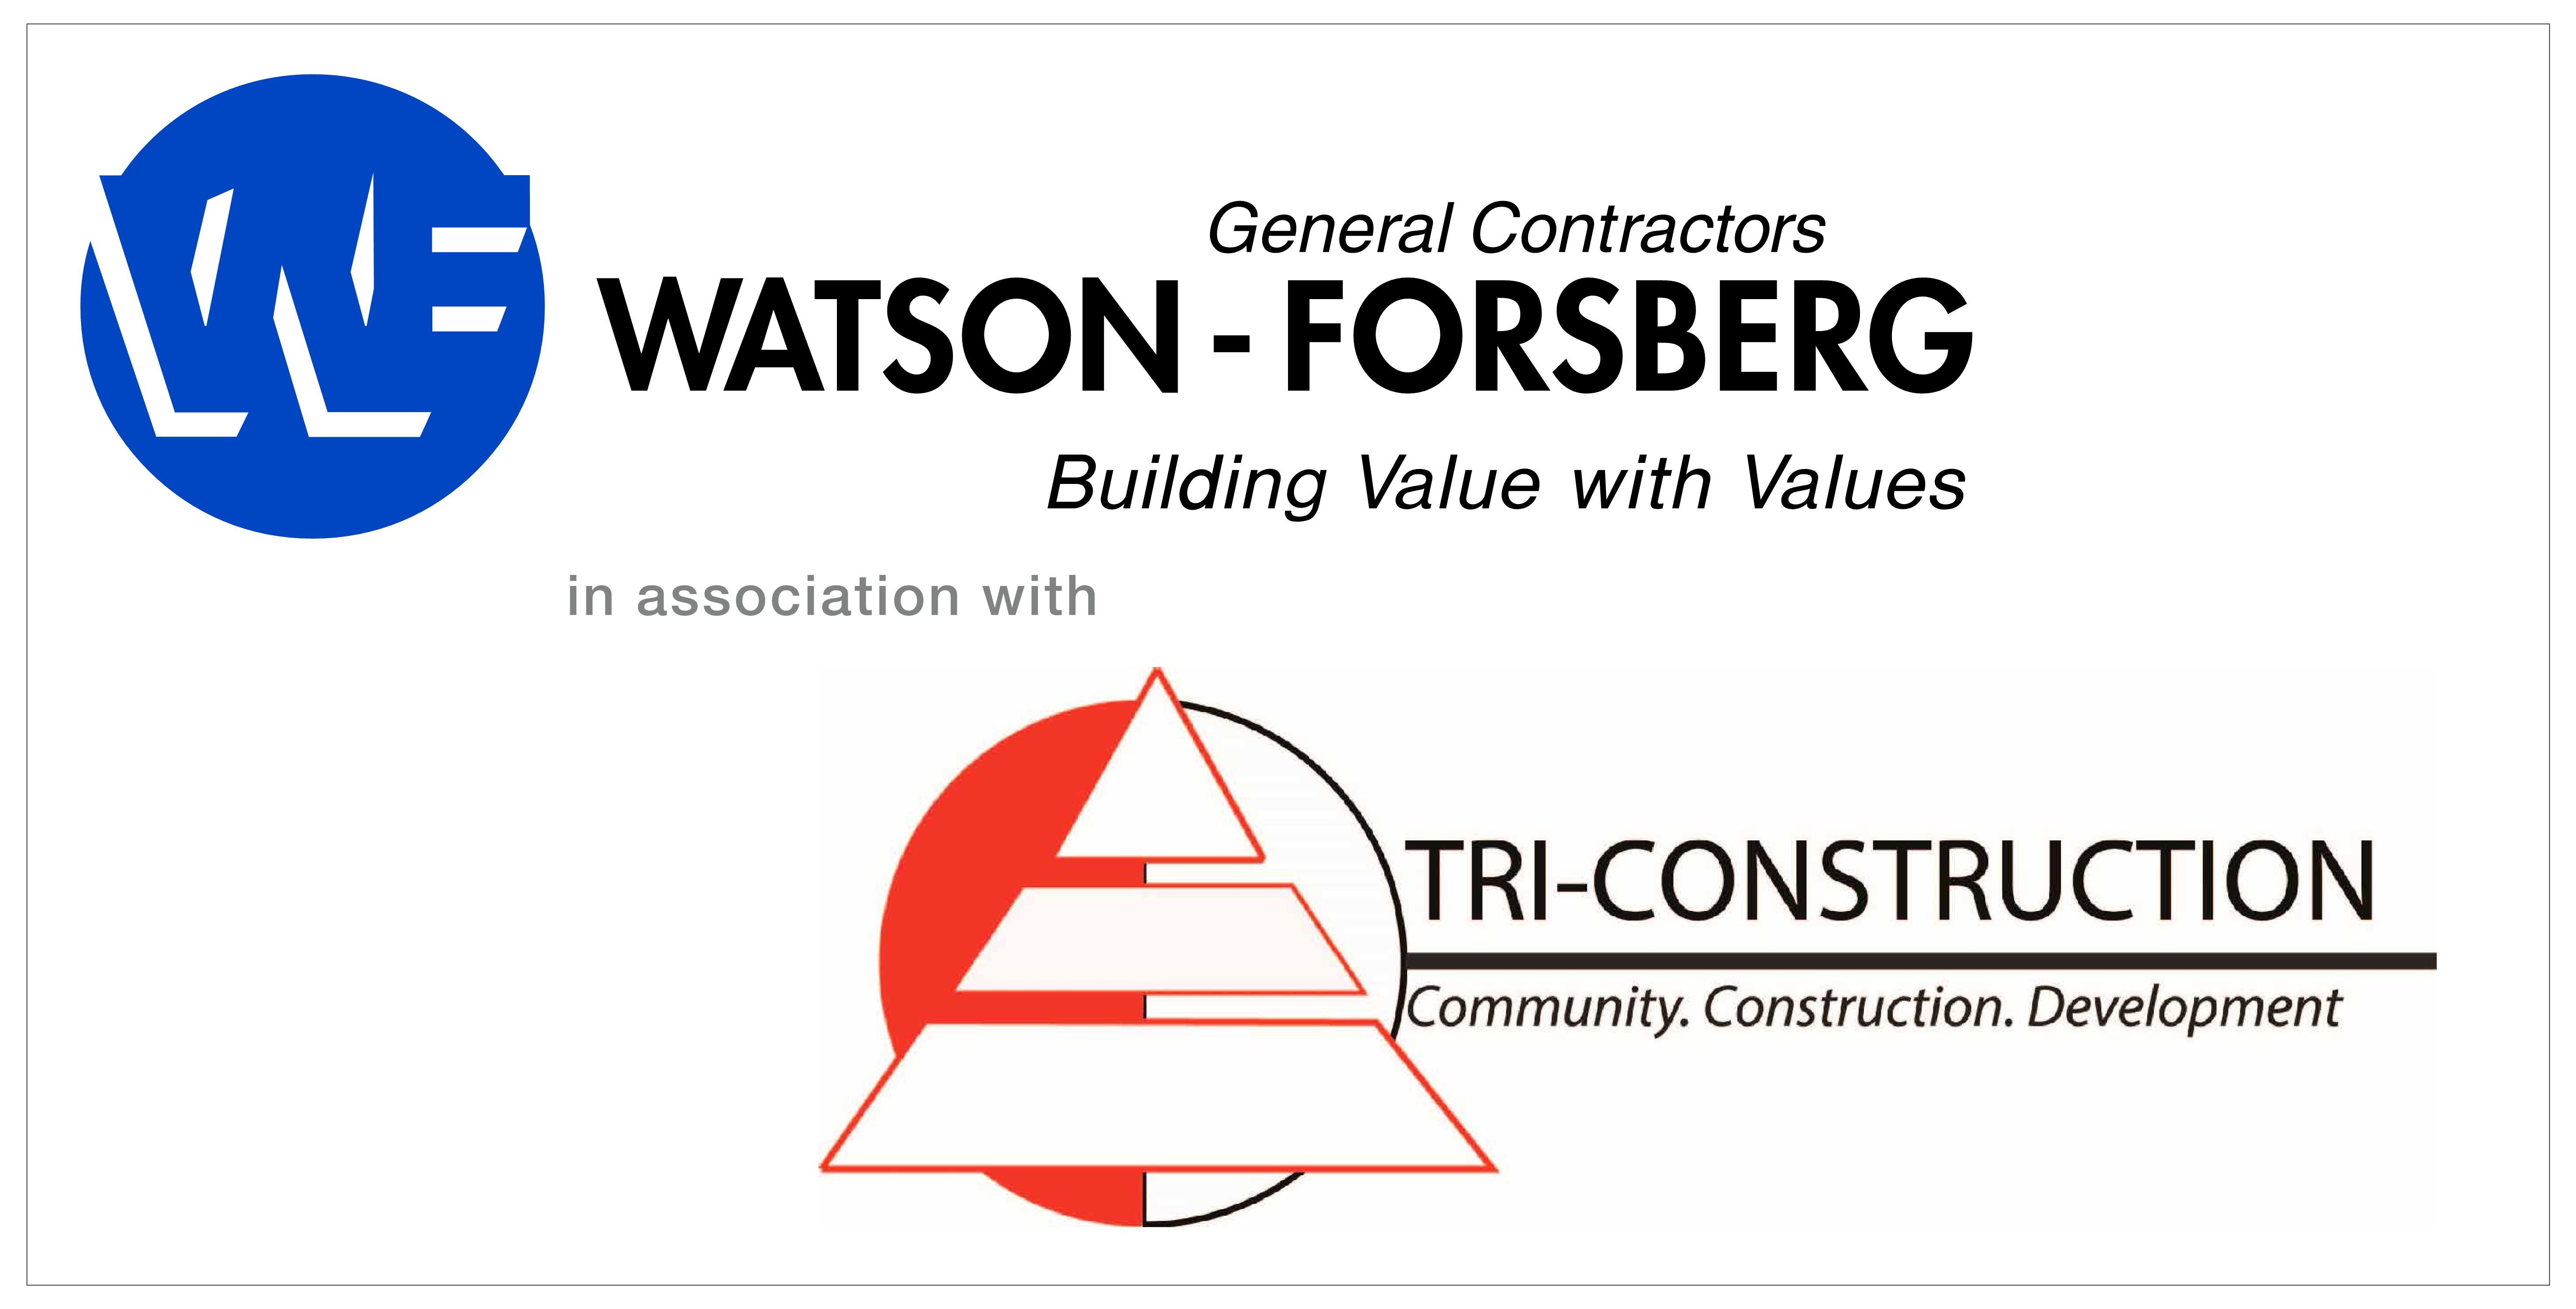 Watson-Forsberg